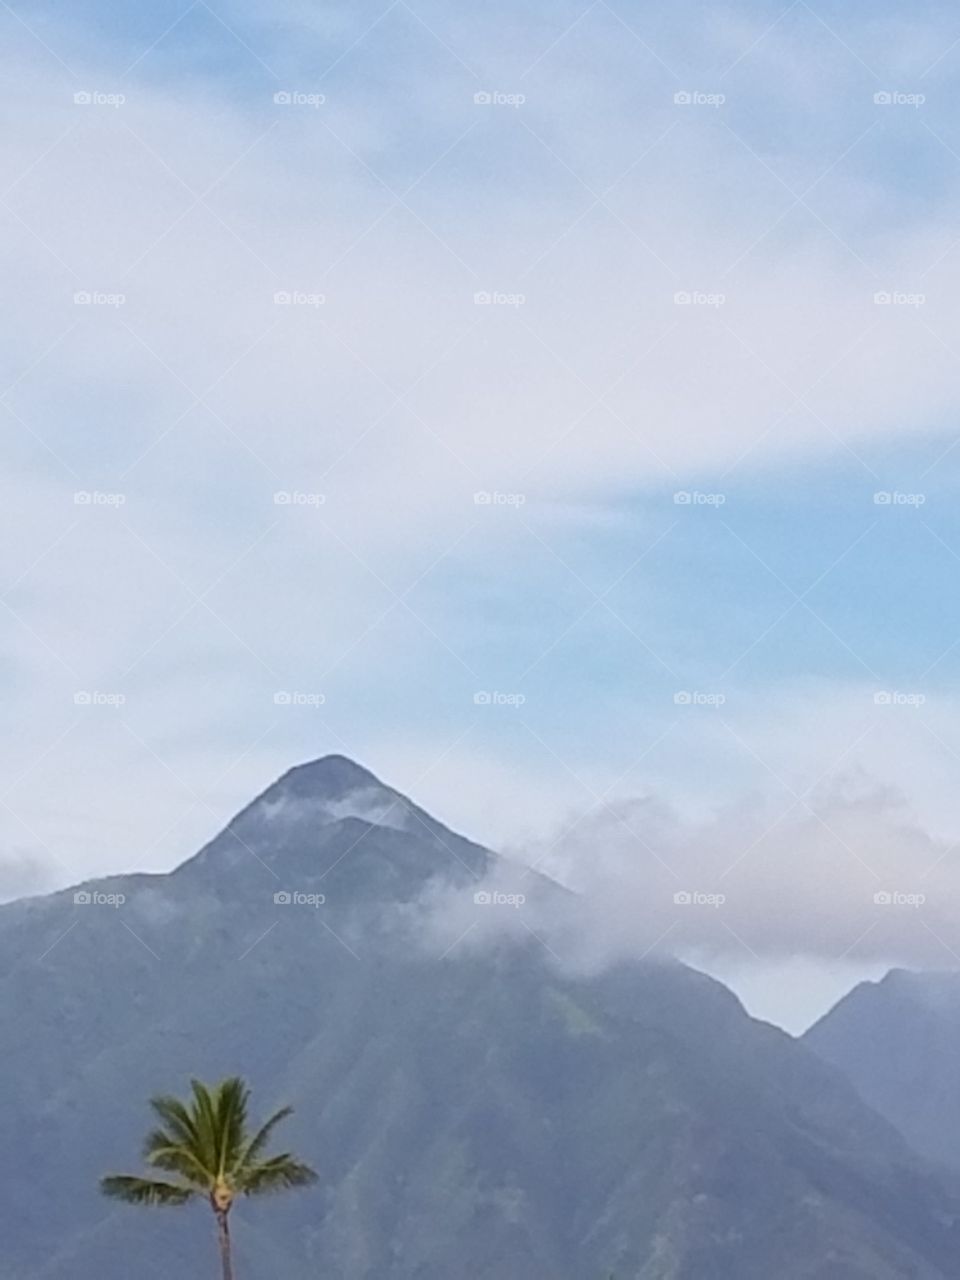 Maui sky